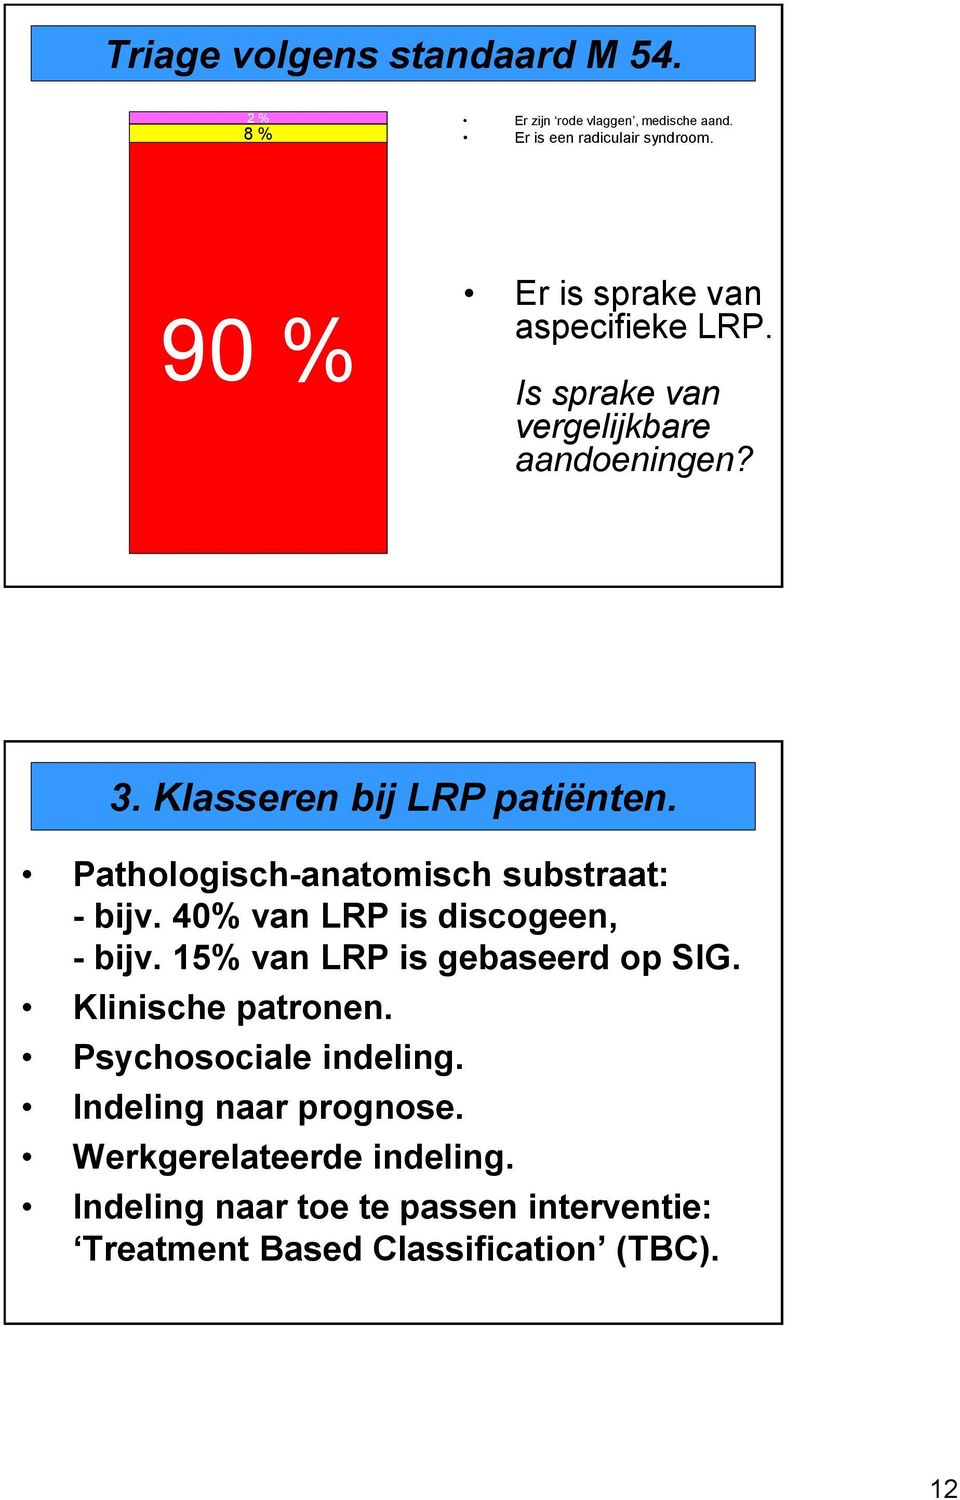 Pathologisch-anatomisch substraat: - bijv. 40% van LRP is discogeen, - bijv. 15% van LRP is gebaseerd op SIG.